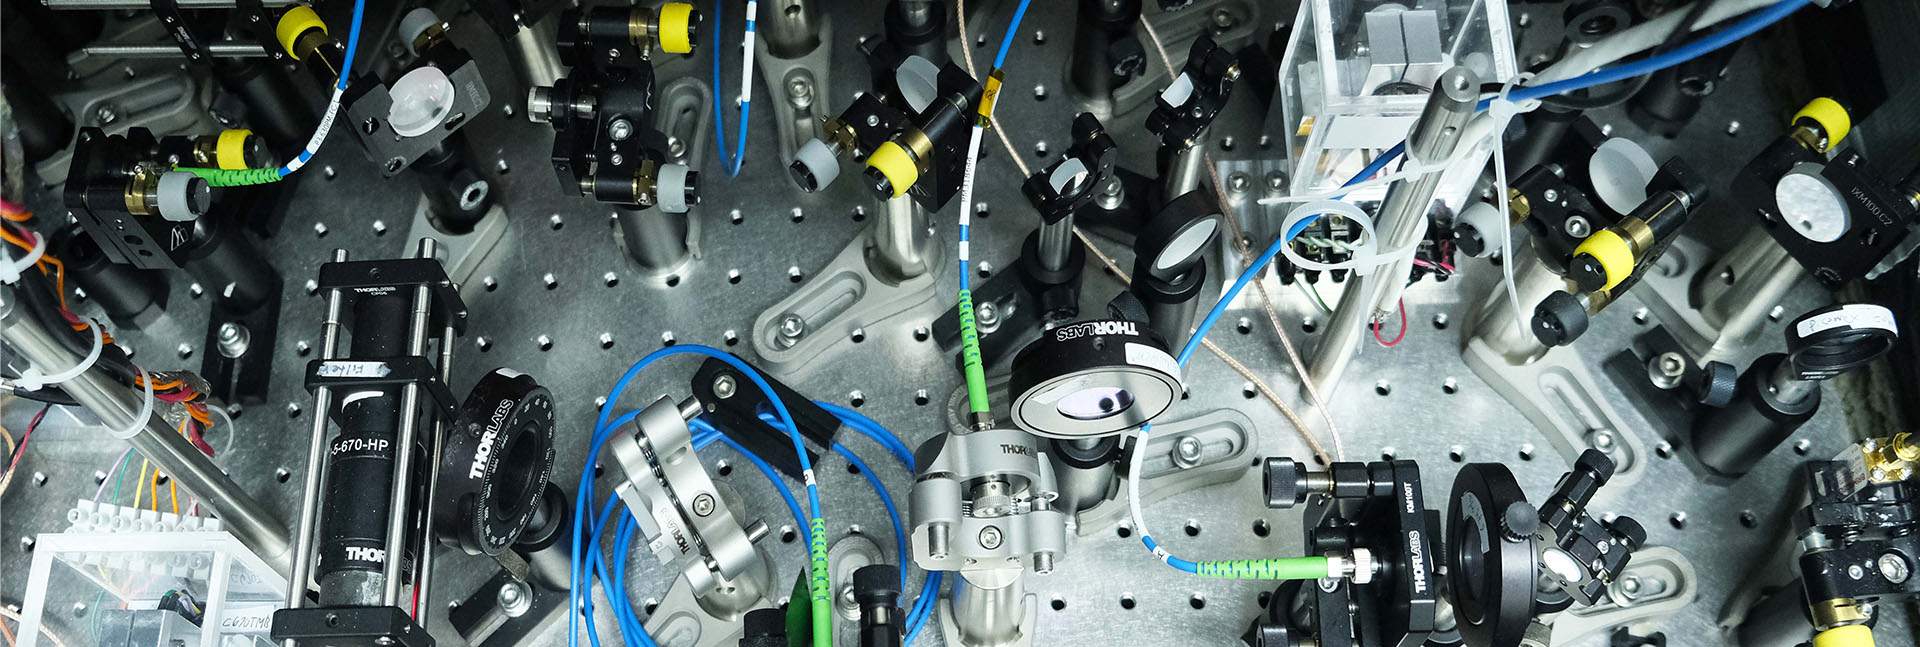 אוסף של רכיבים אופטיים הדרושים לייצור הבזקי לייזר בעלי תכונות מתאימות לשליטה ביונים לכודים. תצלום: פרדי פיזנטי